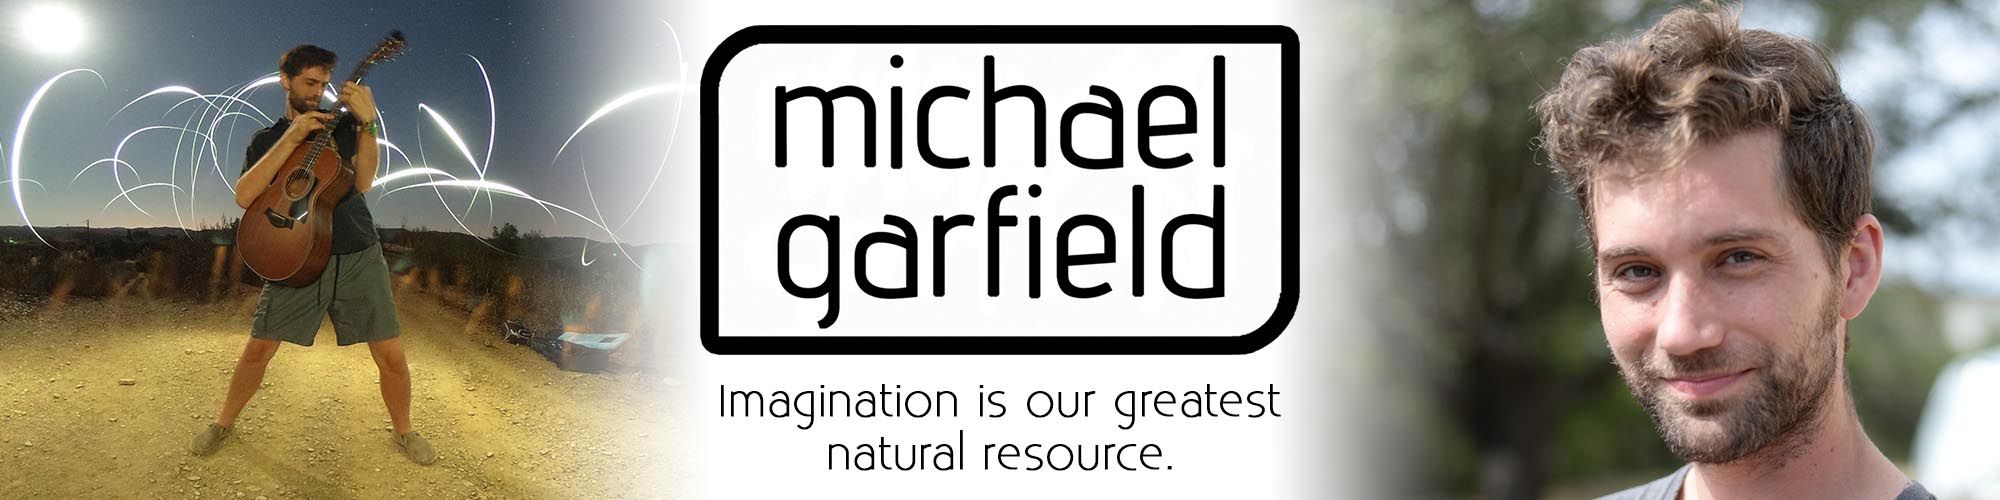 Michael Garfield - New Header Banner.jpg